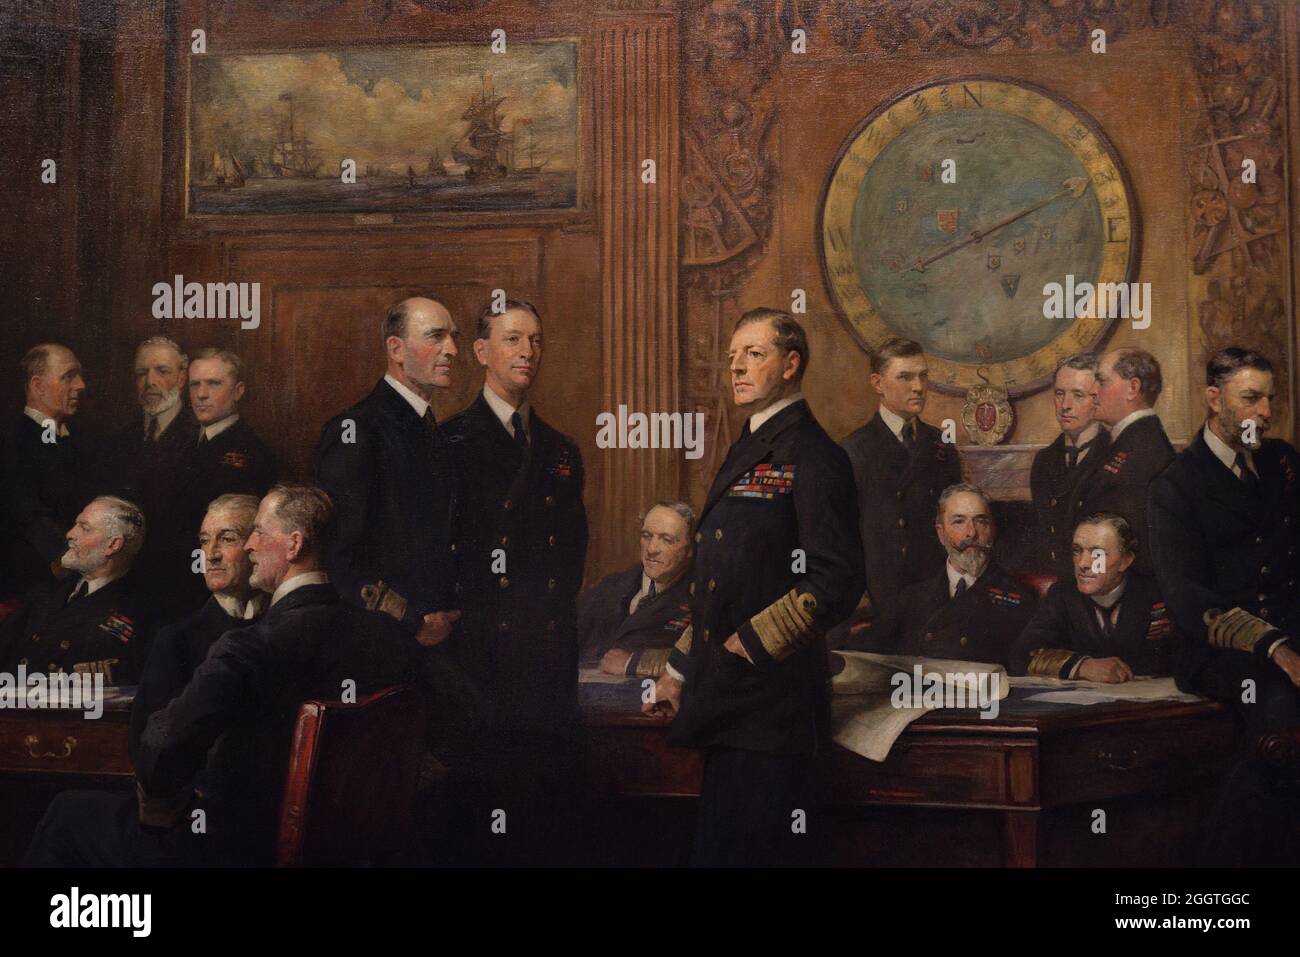 Marineoffiziere des Ersten Weltkriegs Gemälde von Arthur Stockdale Cope (1857-1940). Öl auf Leinwand (264,1 x 514,4 cm), 1921. Details. National Portrait Gallery. London, England, Vereinigtes Königreich. Stockfoto